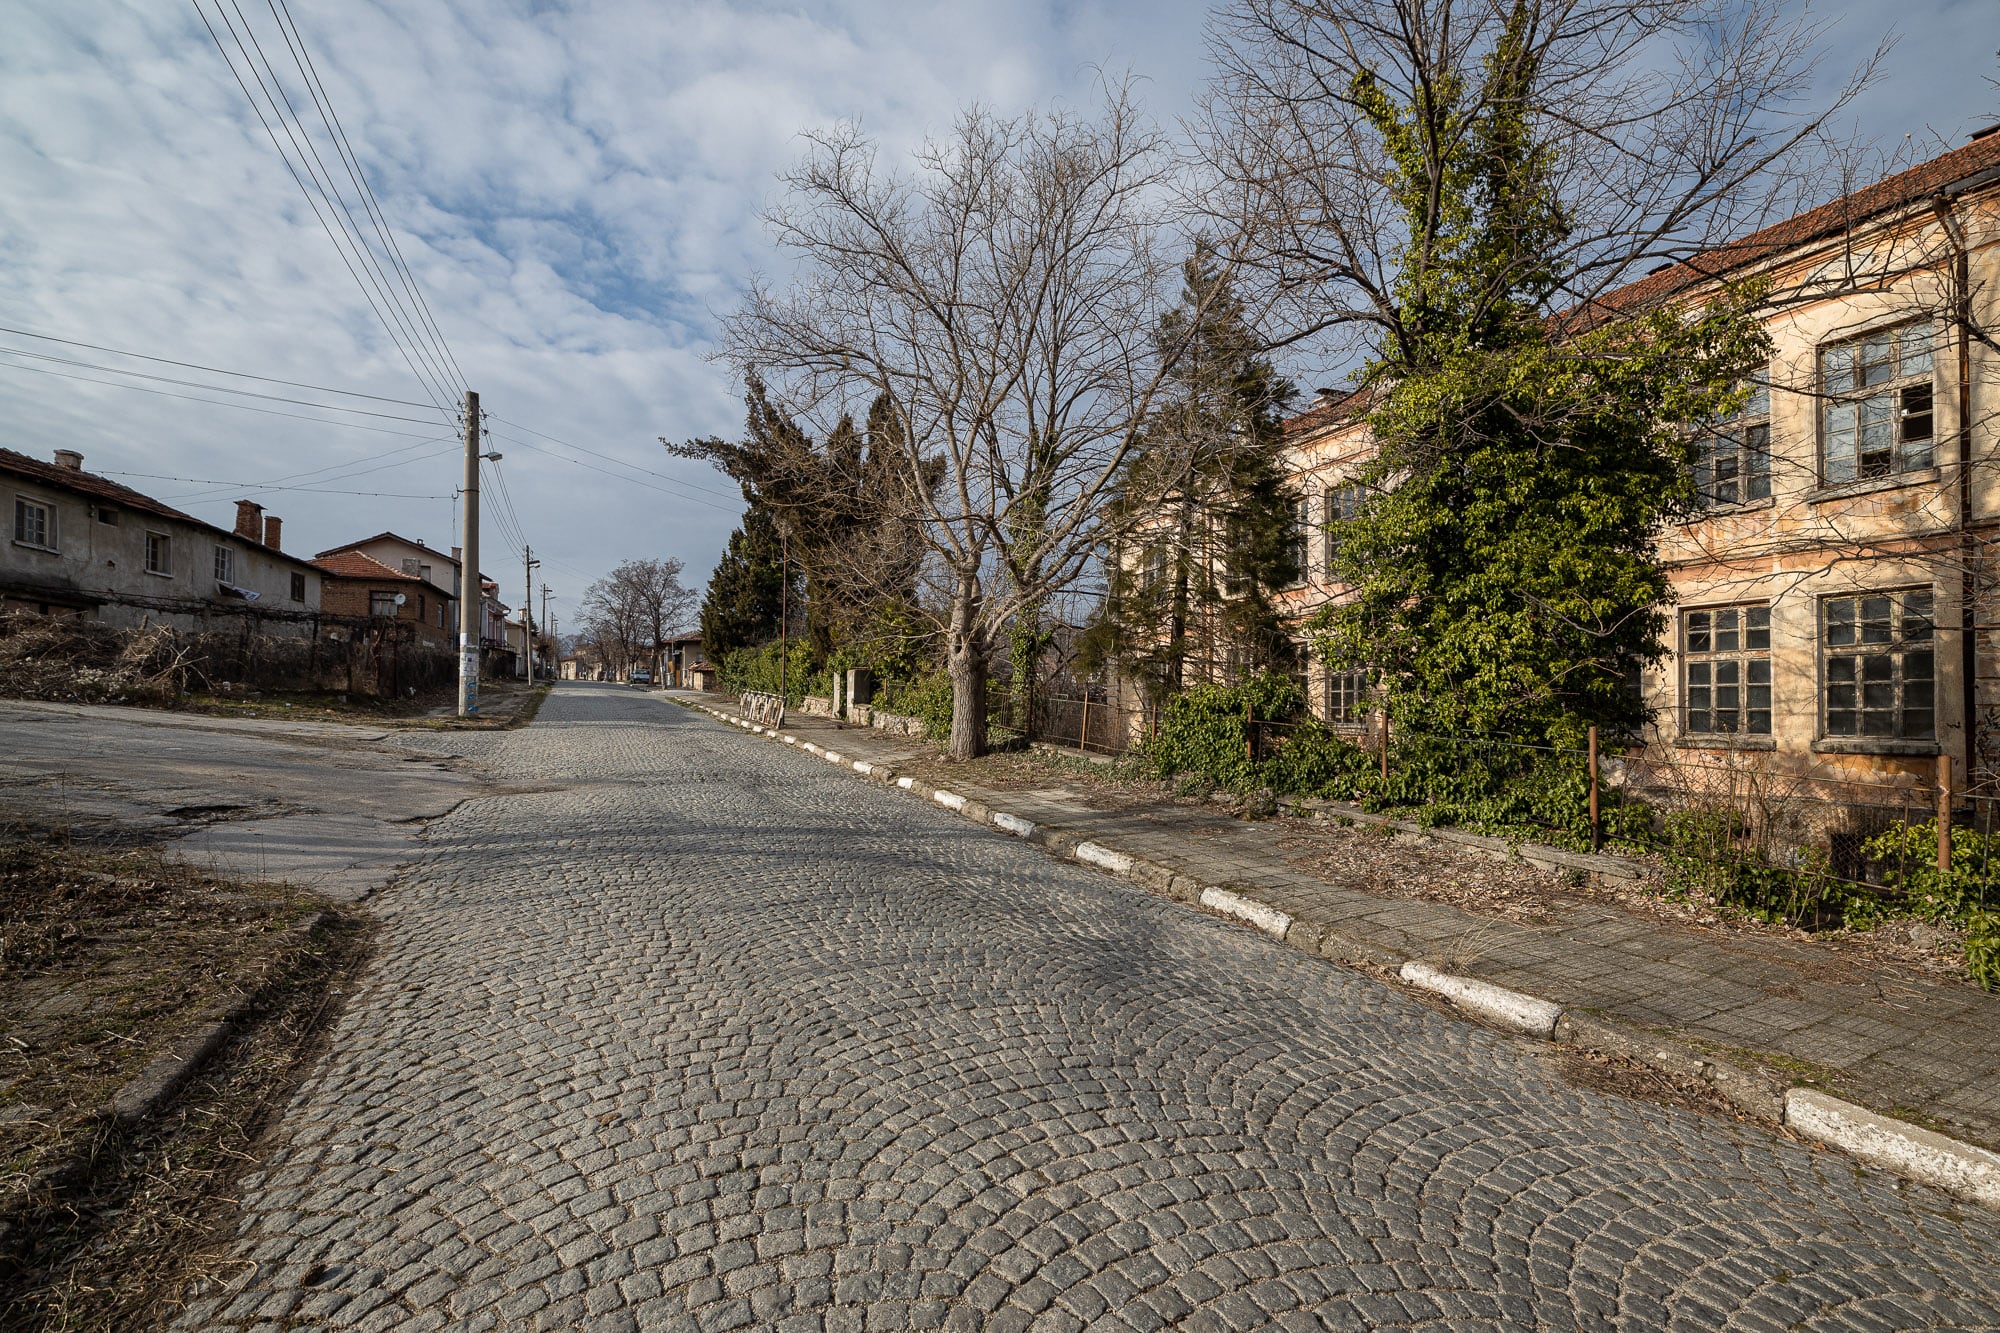 Slavovitsa has cobbled streets